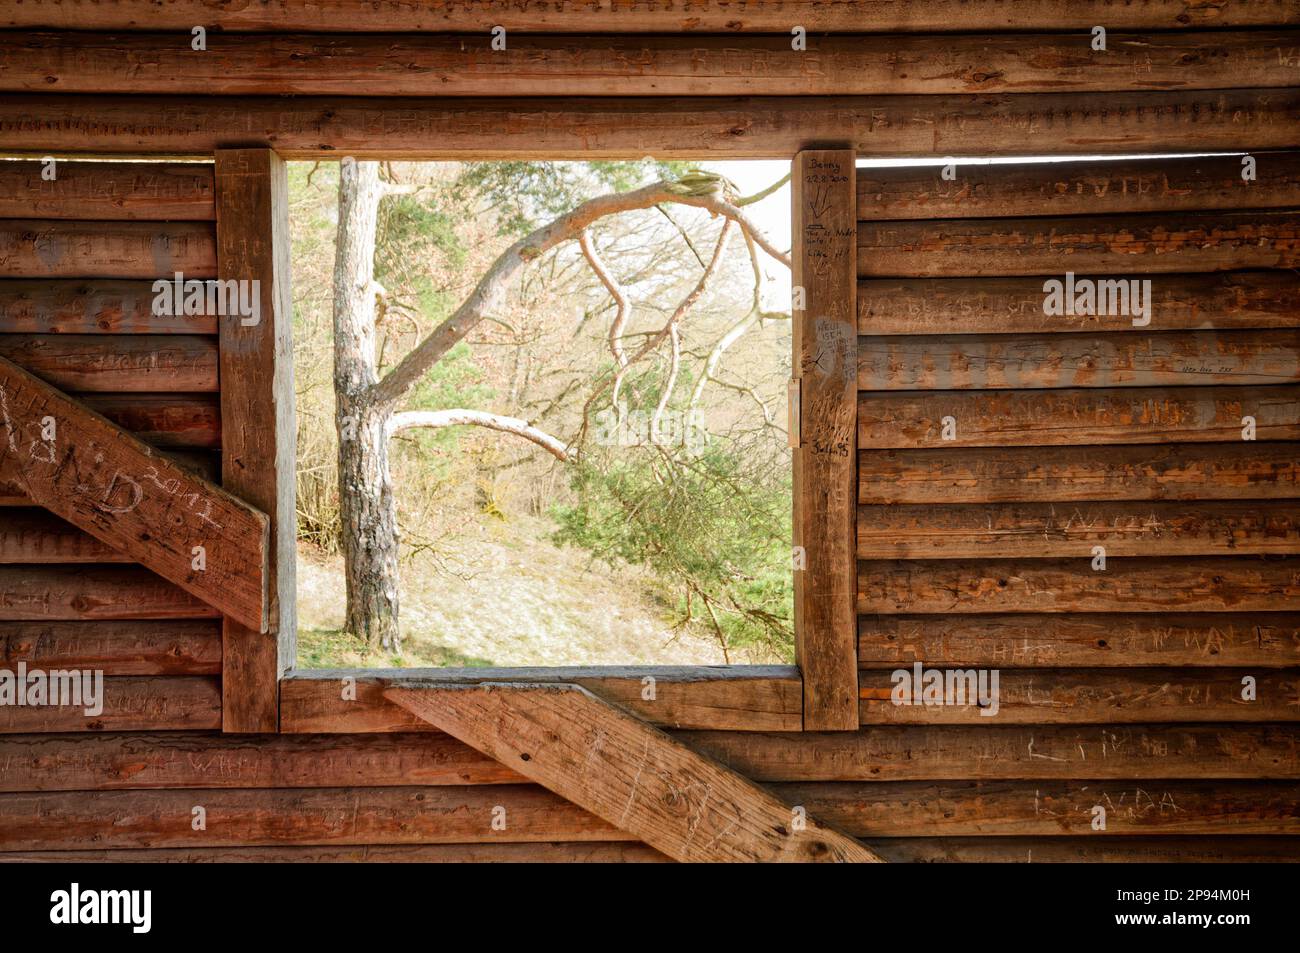 Fenêtre de grange en bois offrant une vue sur un arbre à l'extérieur Banque D'Images